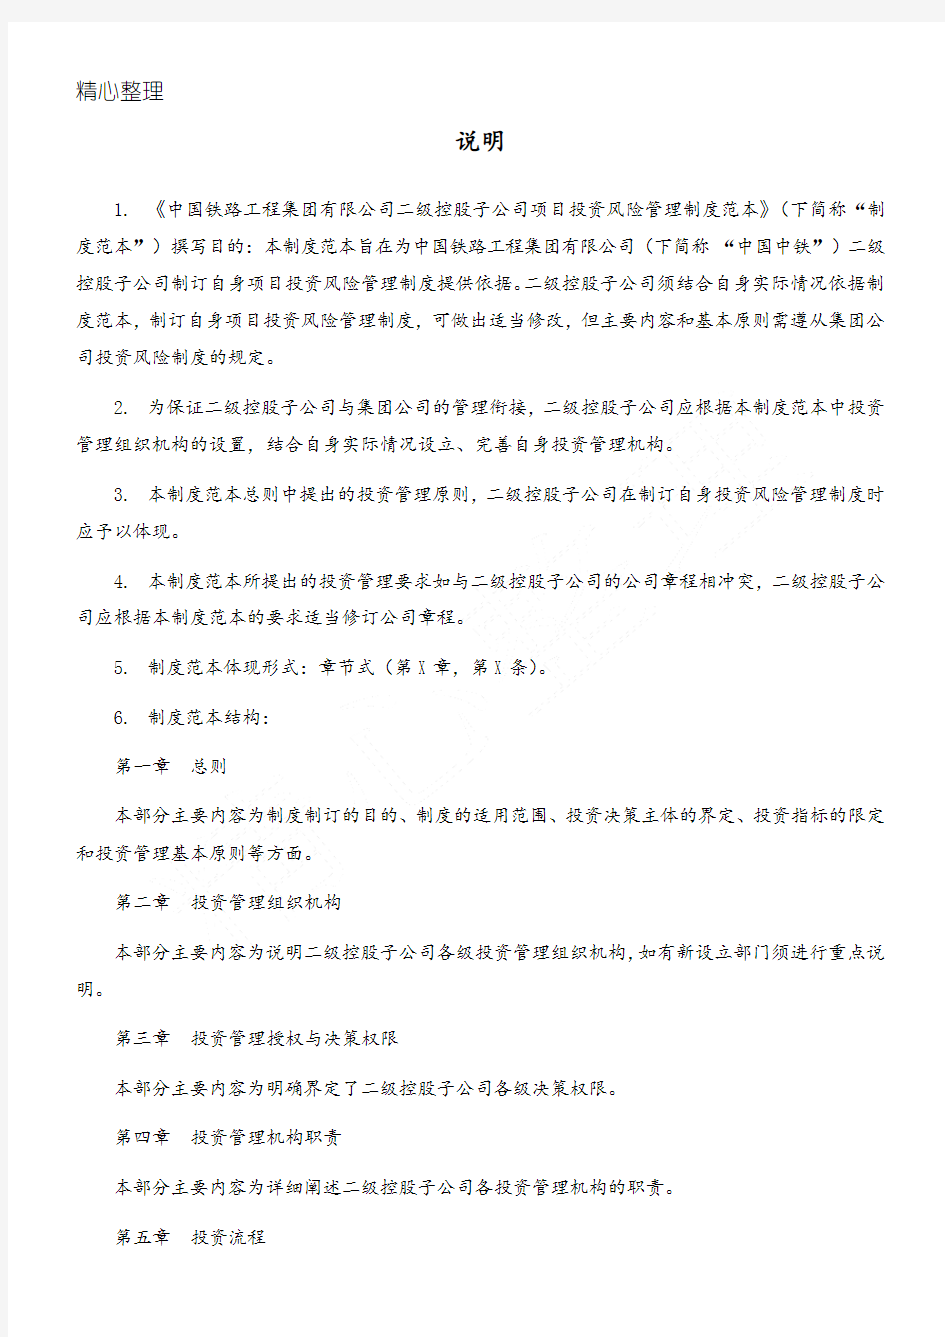 中国中铁项目投资管理制度守则范本0509终稿(针对子公司的)